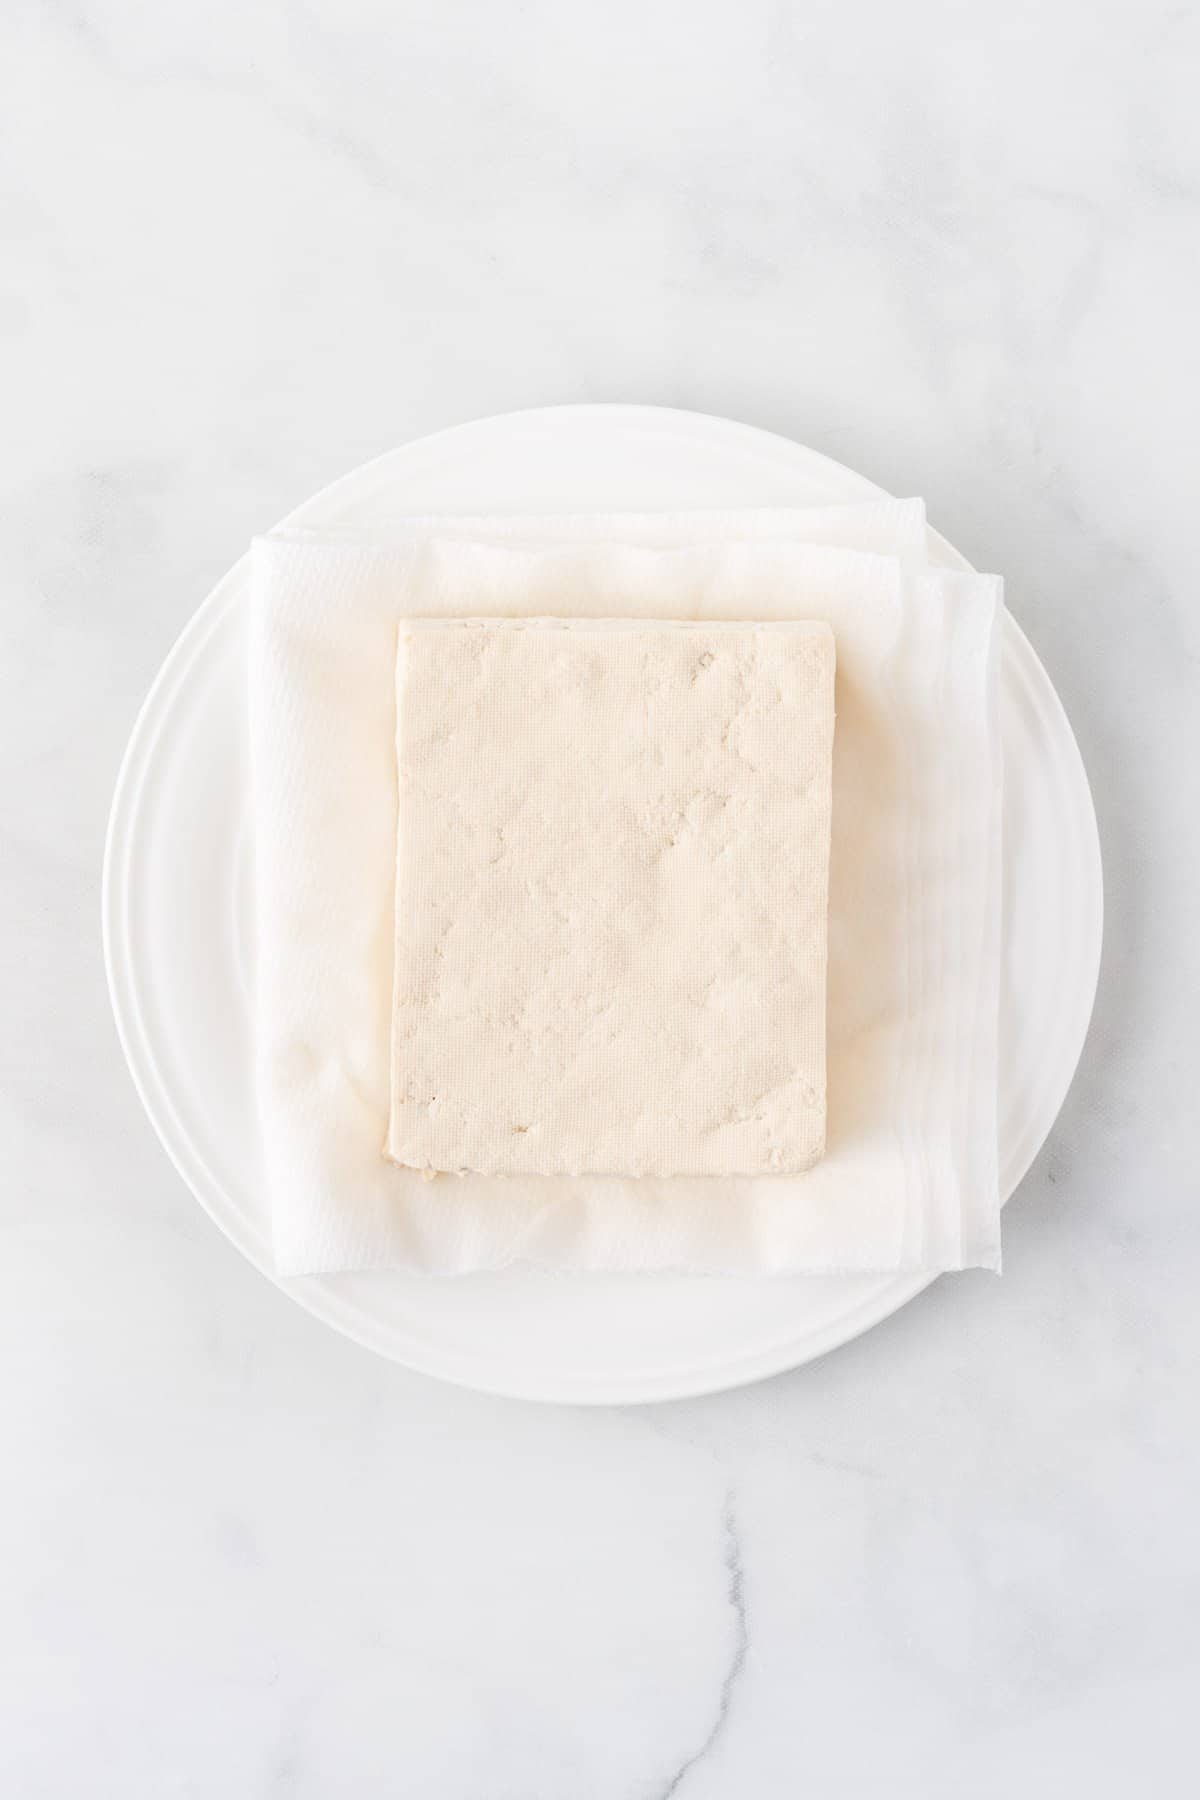 pressed tofu on a plate